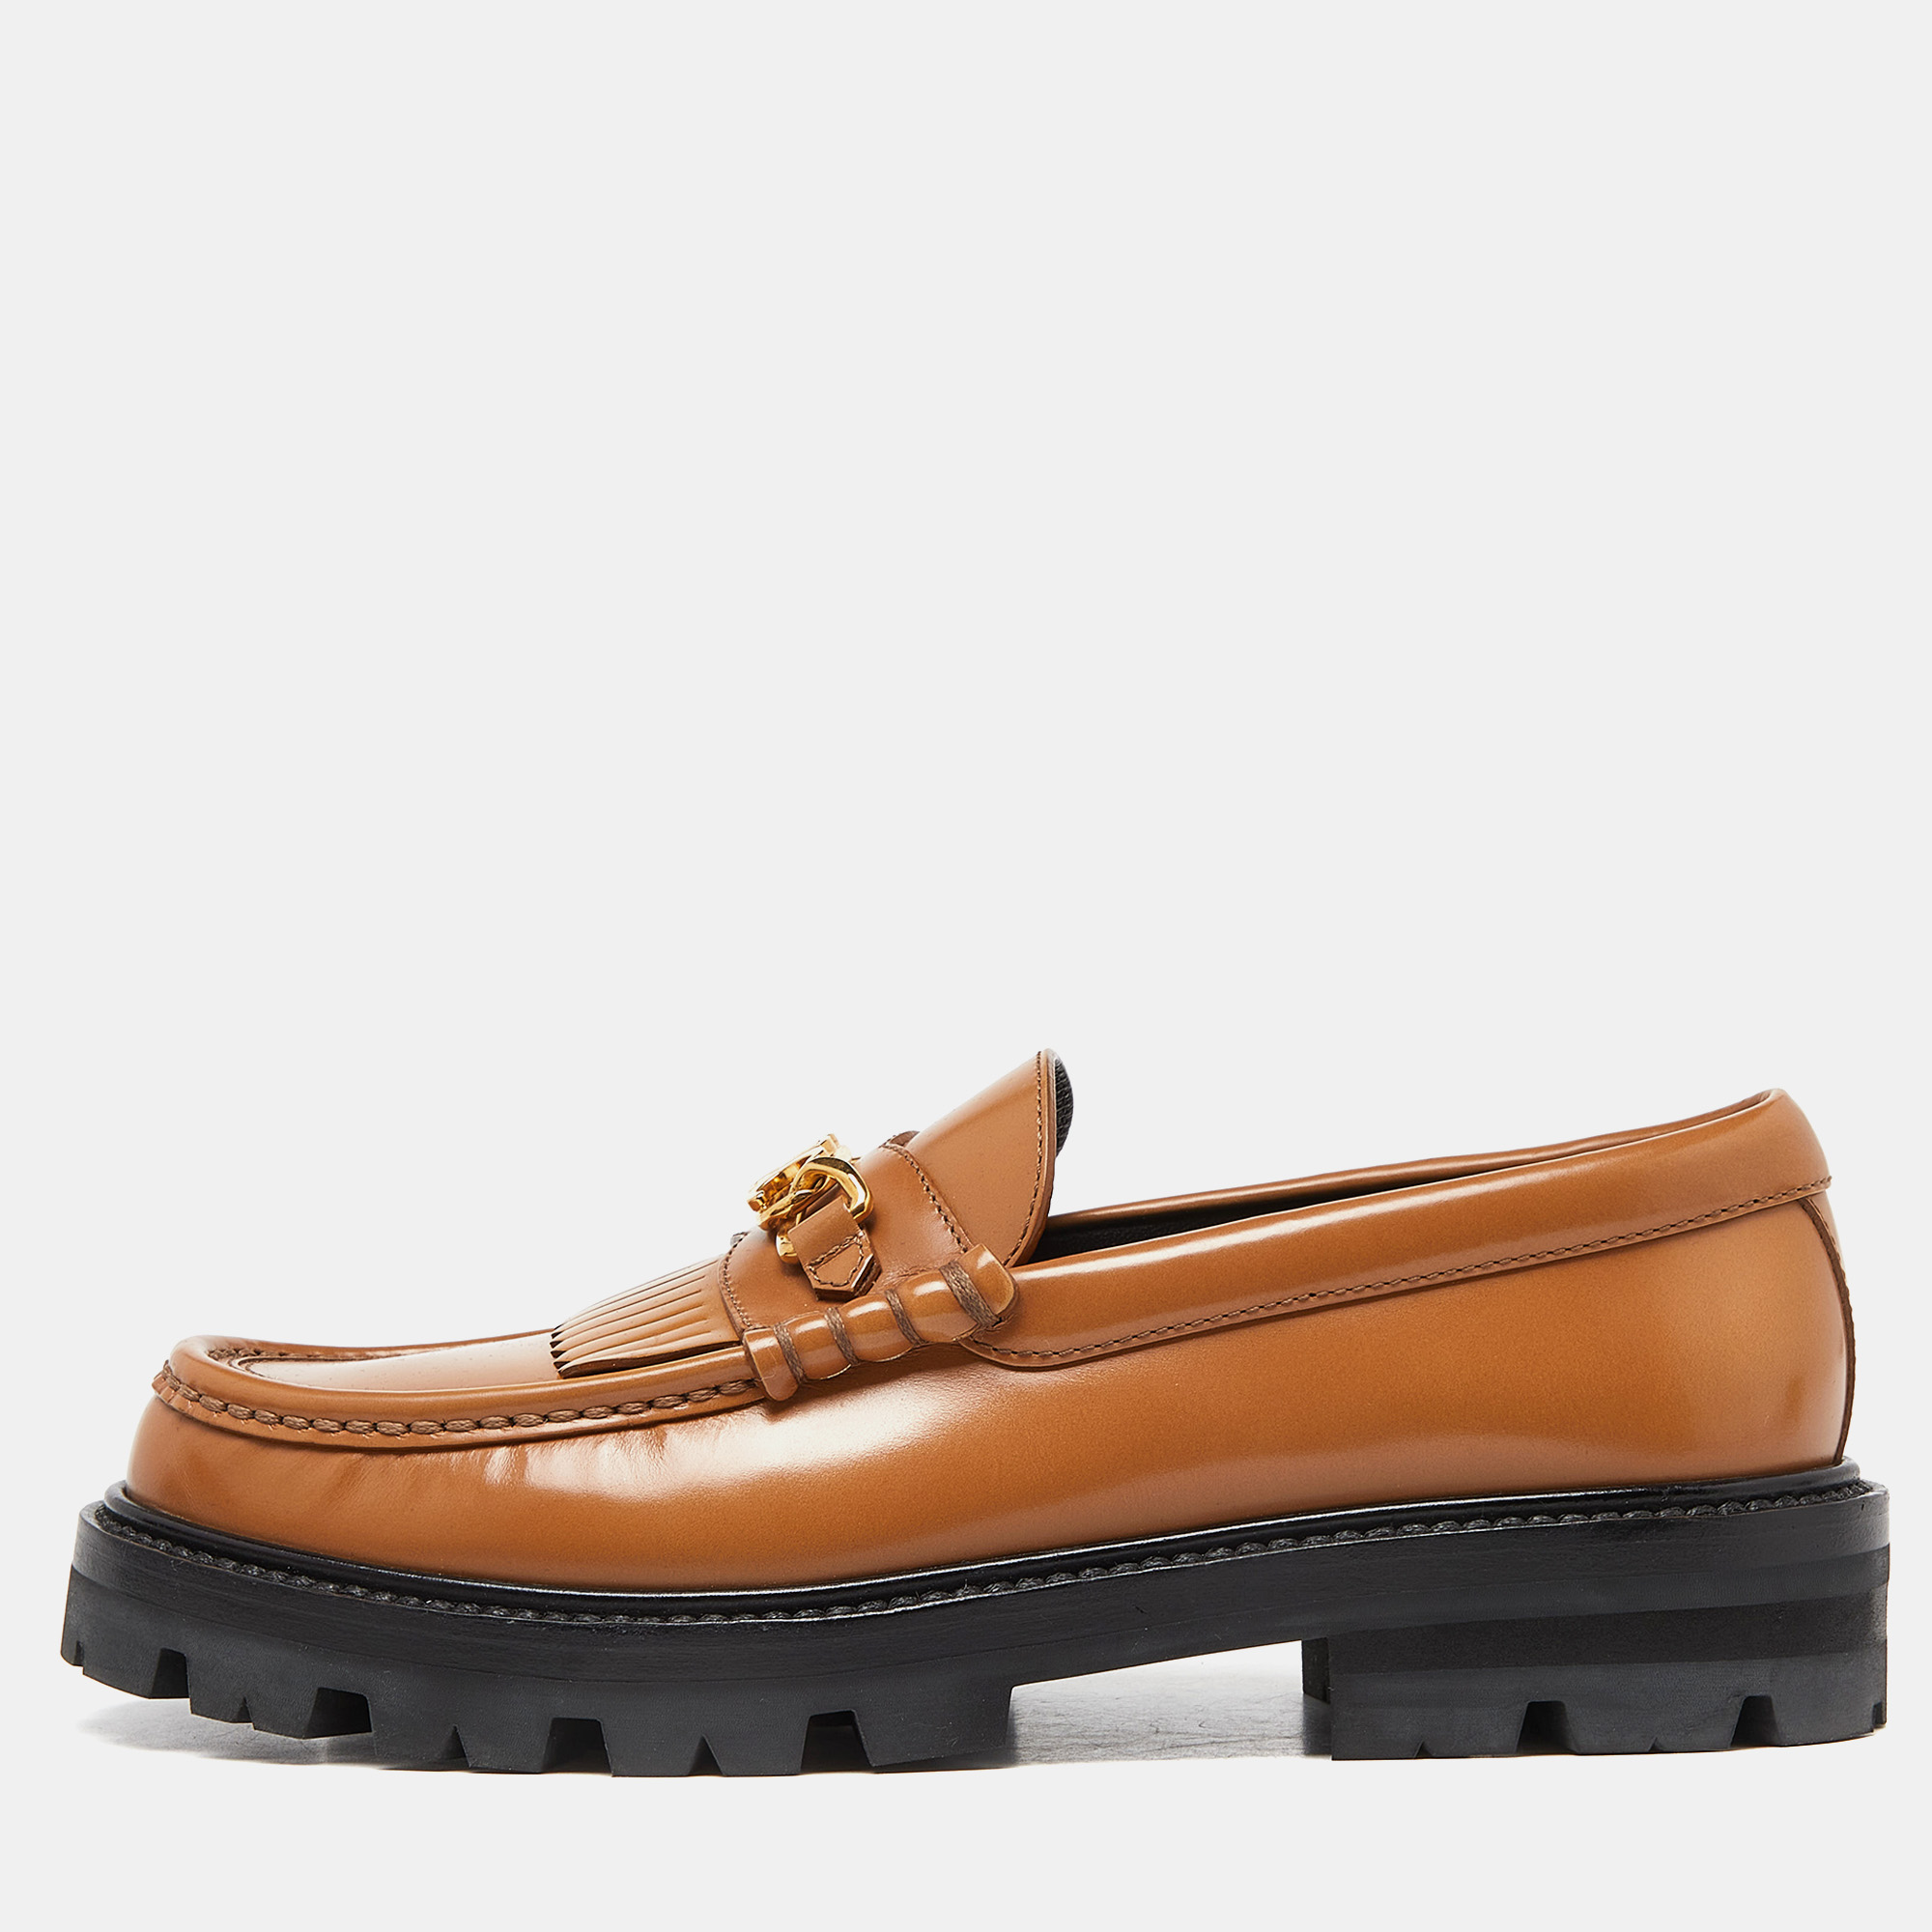 Celine brown leather triomphe frame margaret fringe details slip on loafers size 38